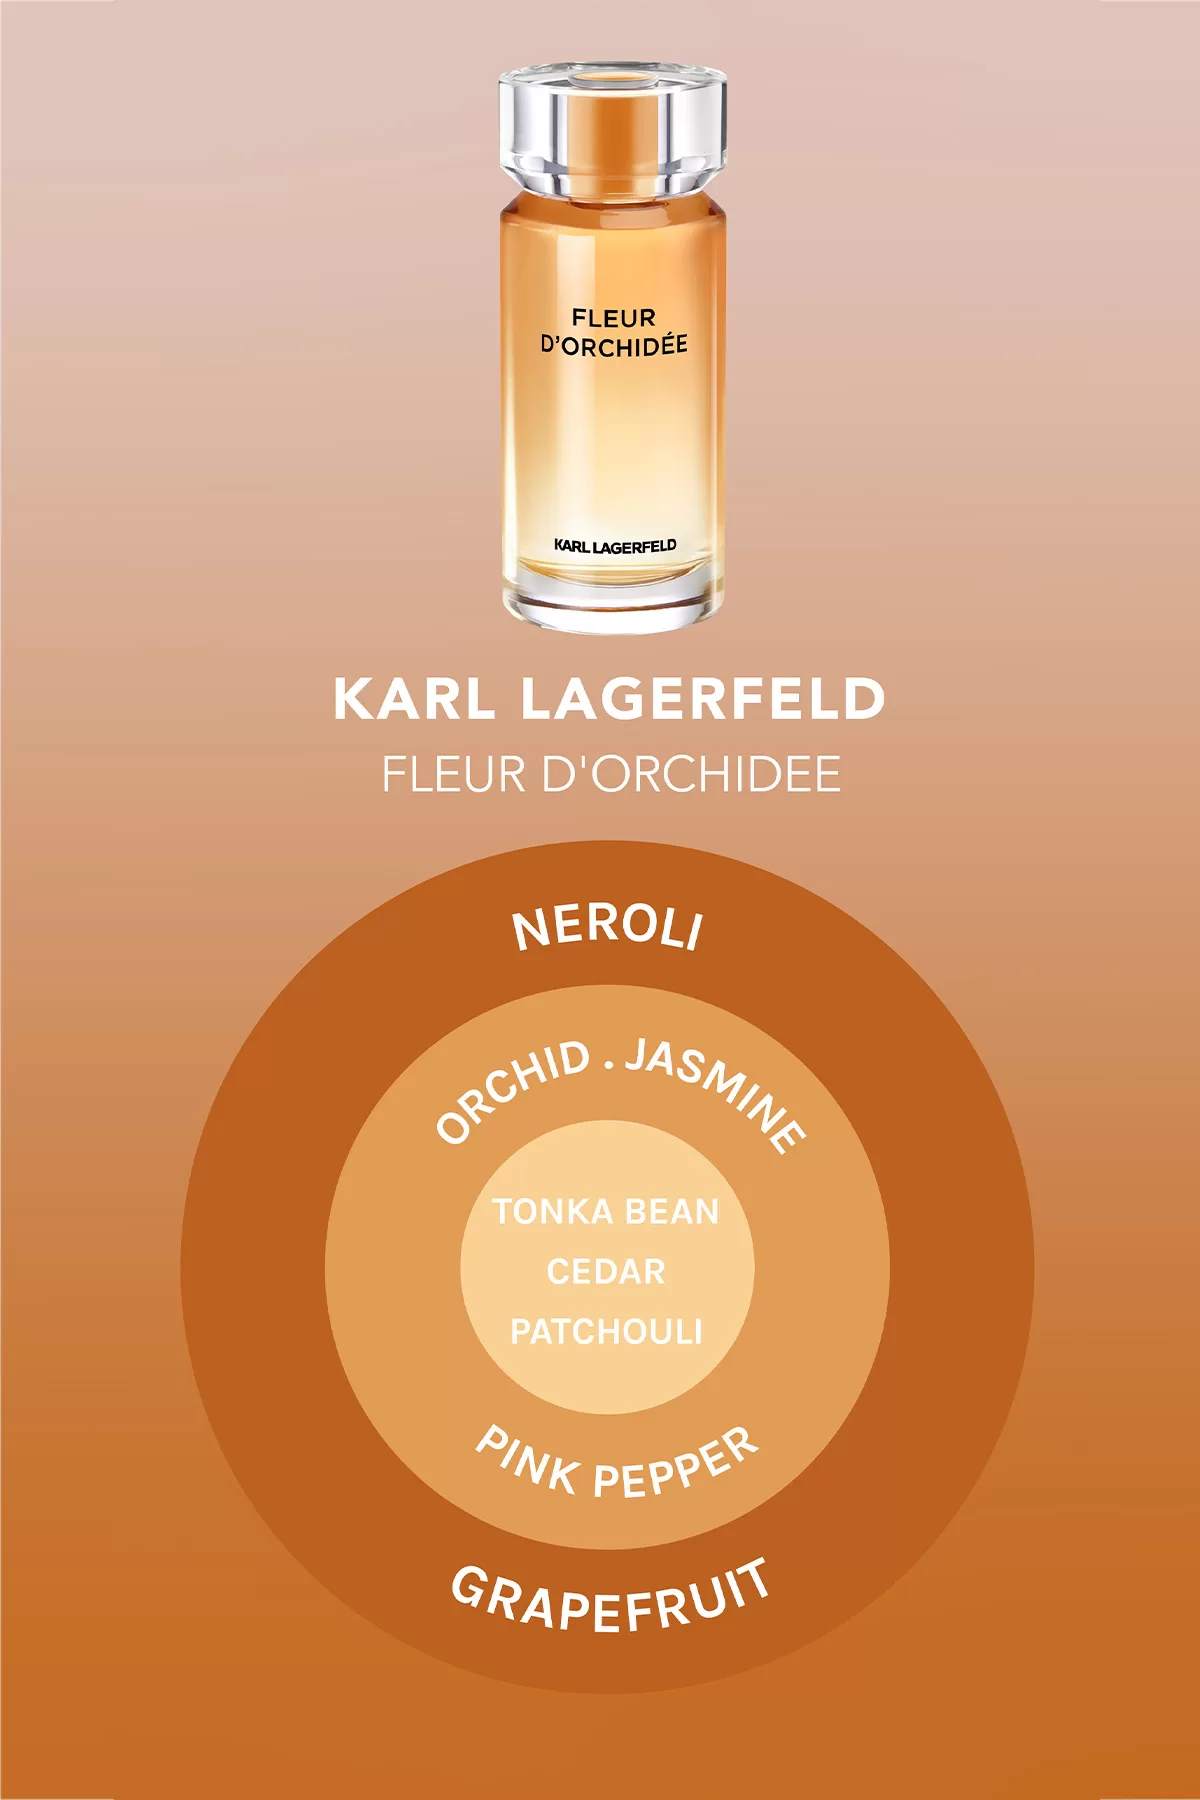 Karl Lagerfeld Fleur d'Orchidée